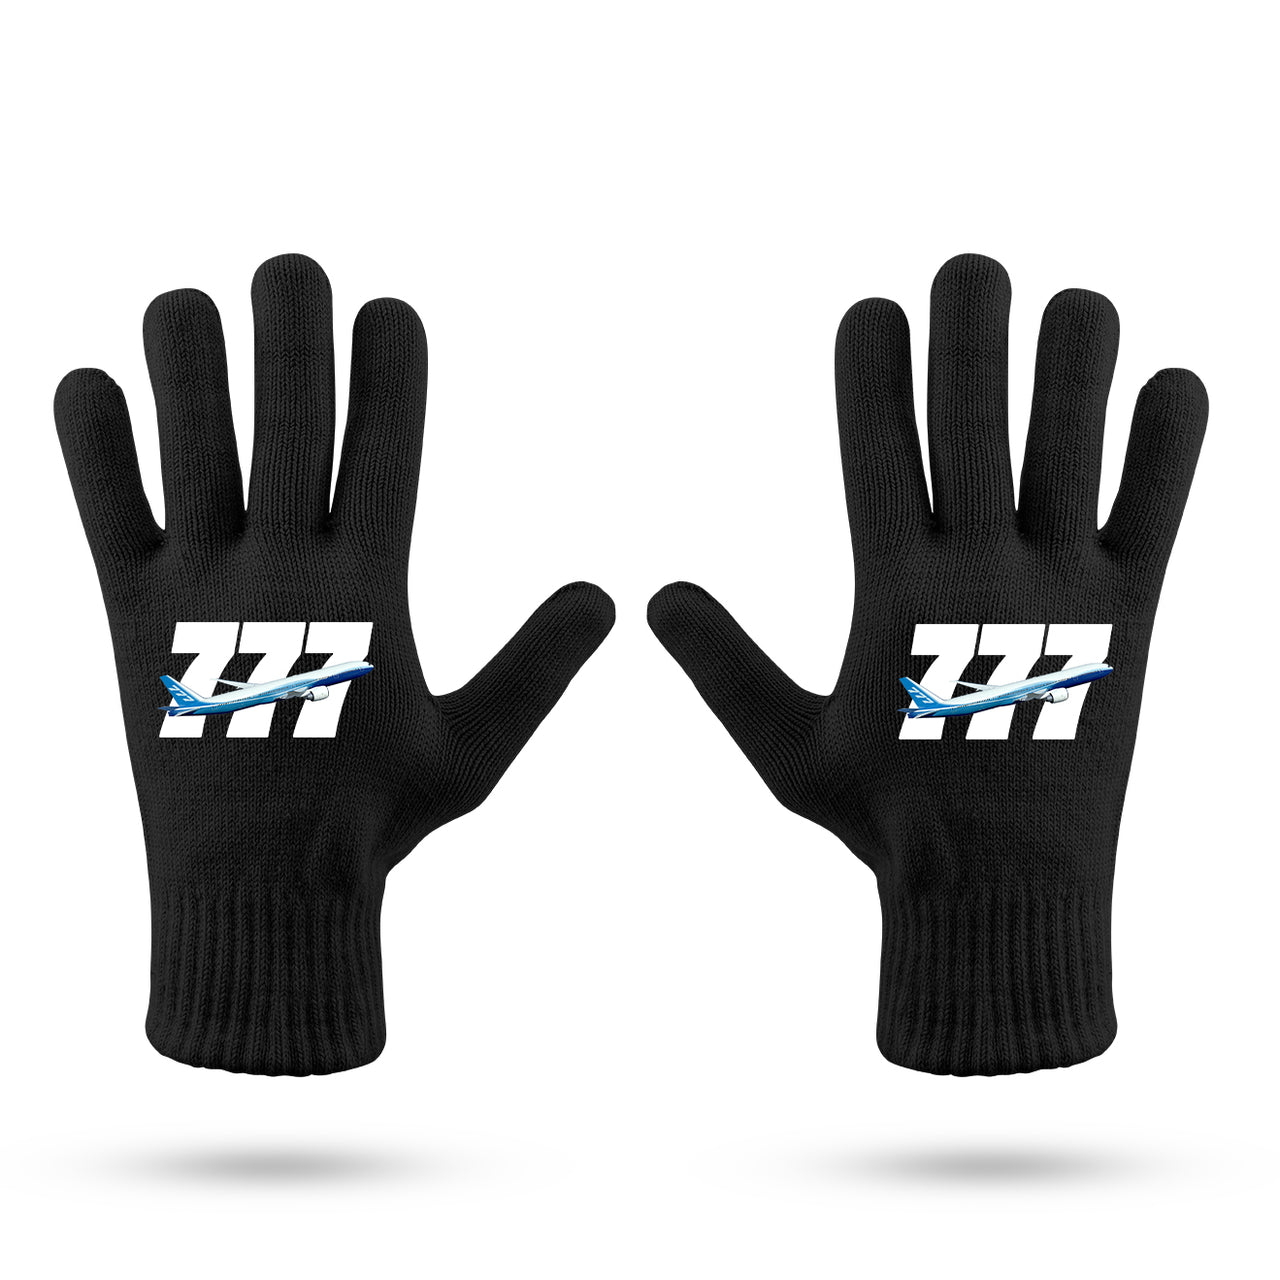 Super Boeing 777 Designed Gloves